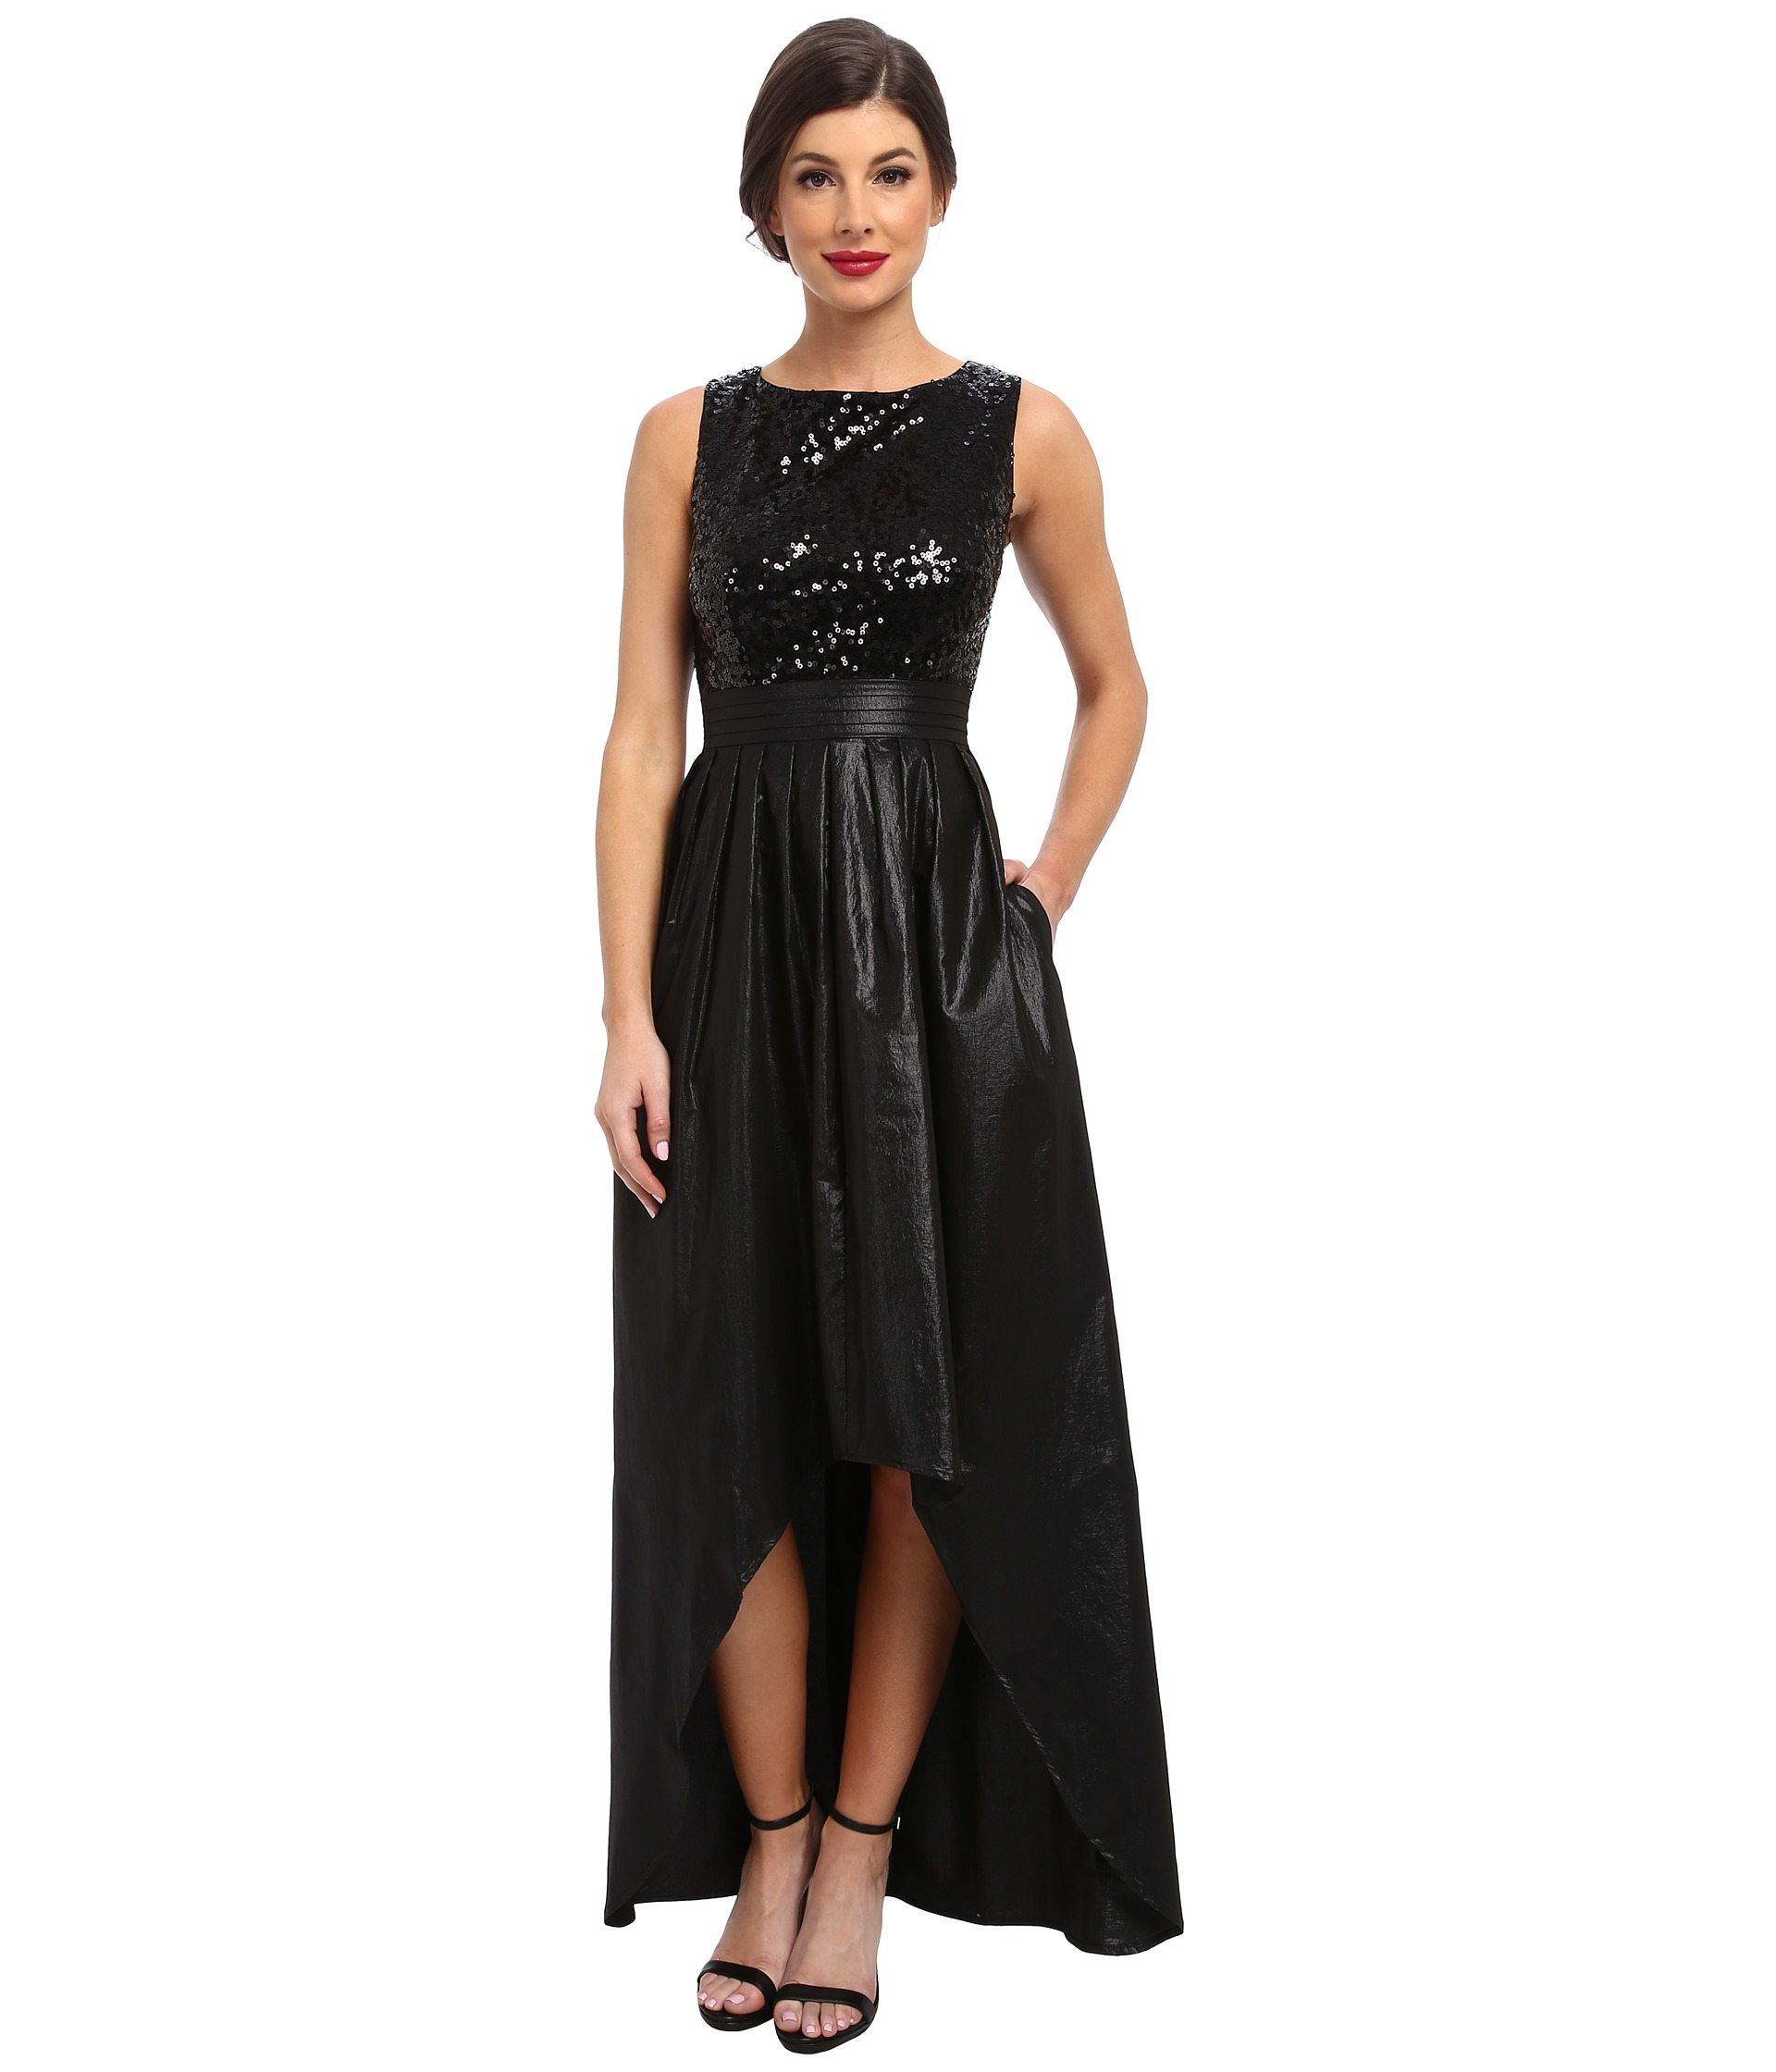 black sequin top dress